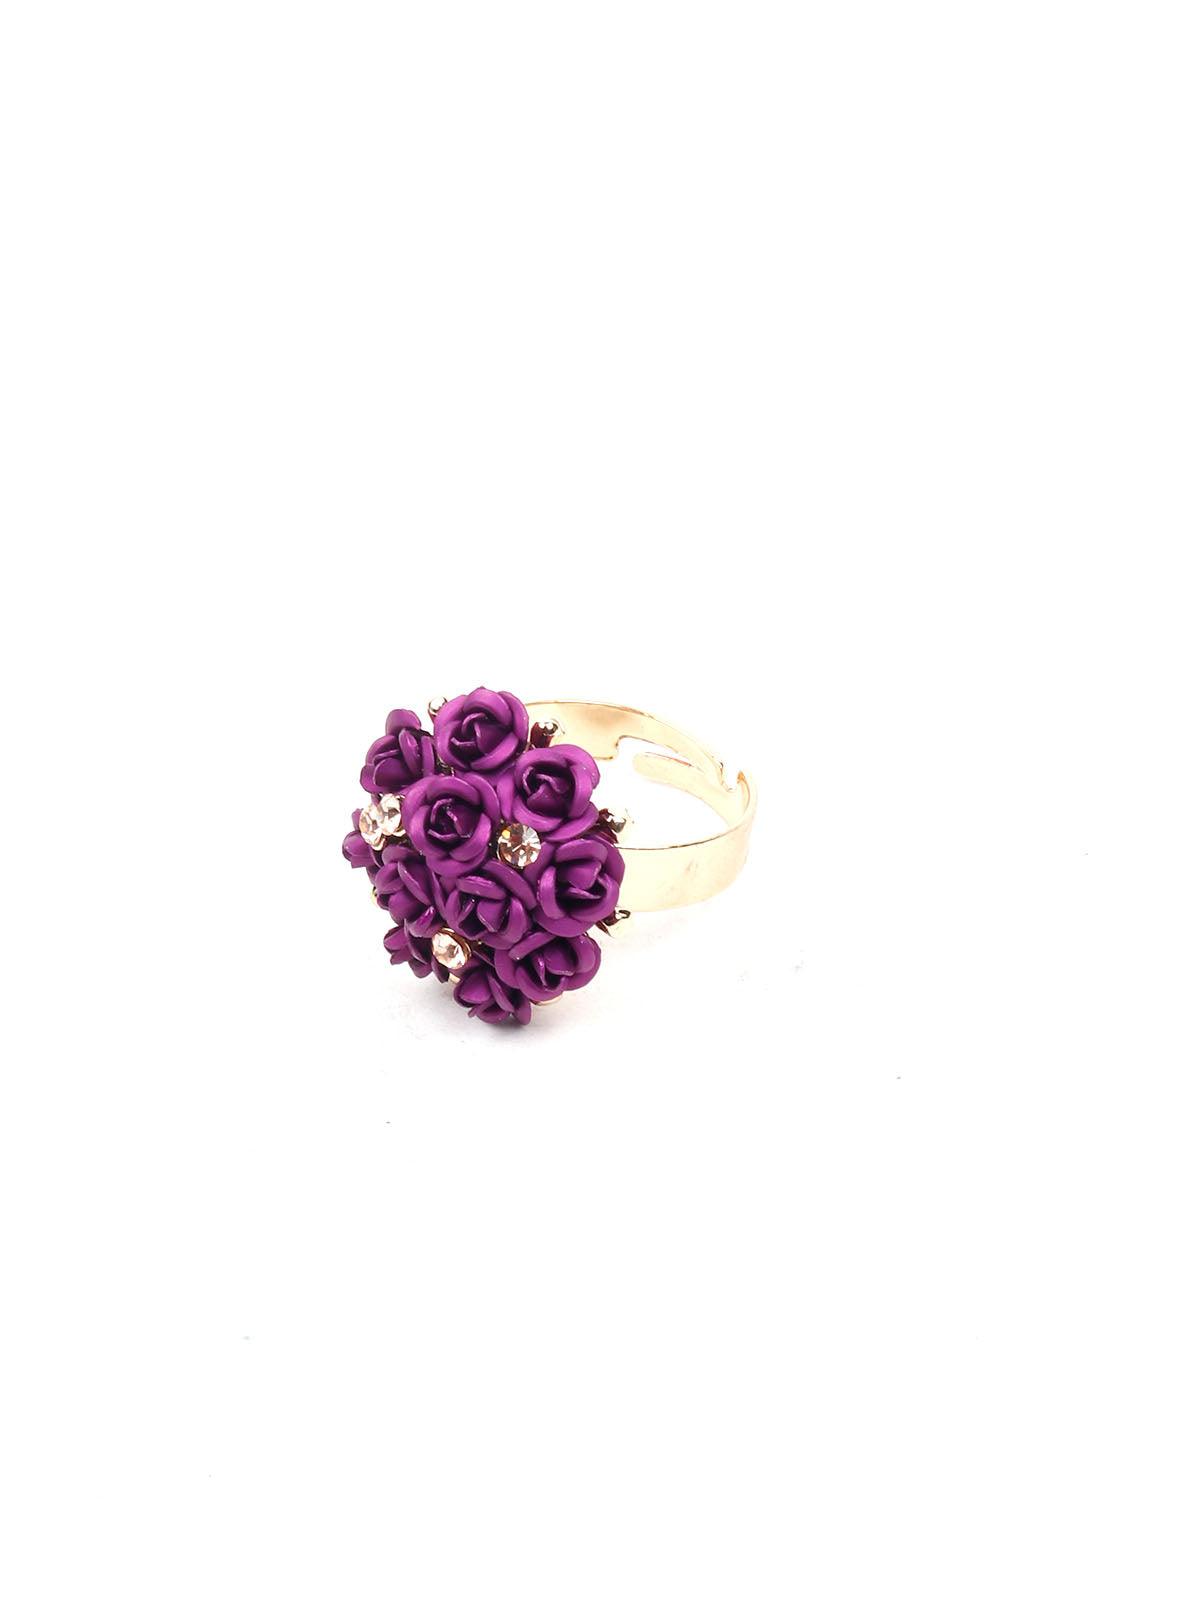 Deep purple floral pendant necklace set - Odette